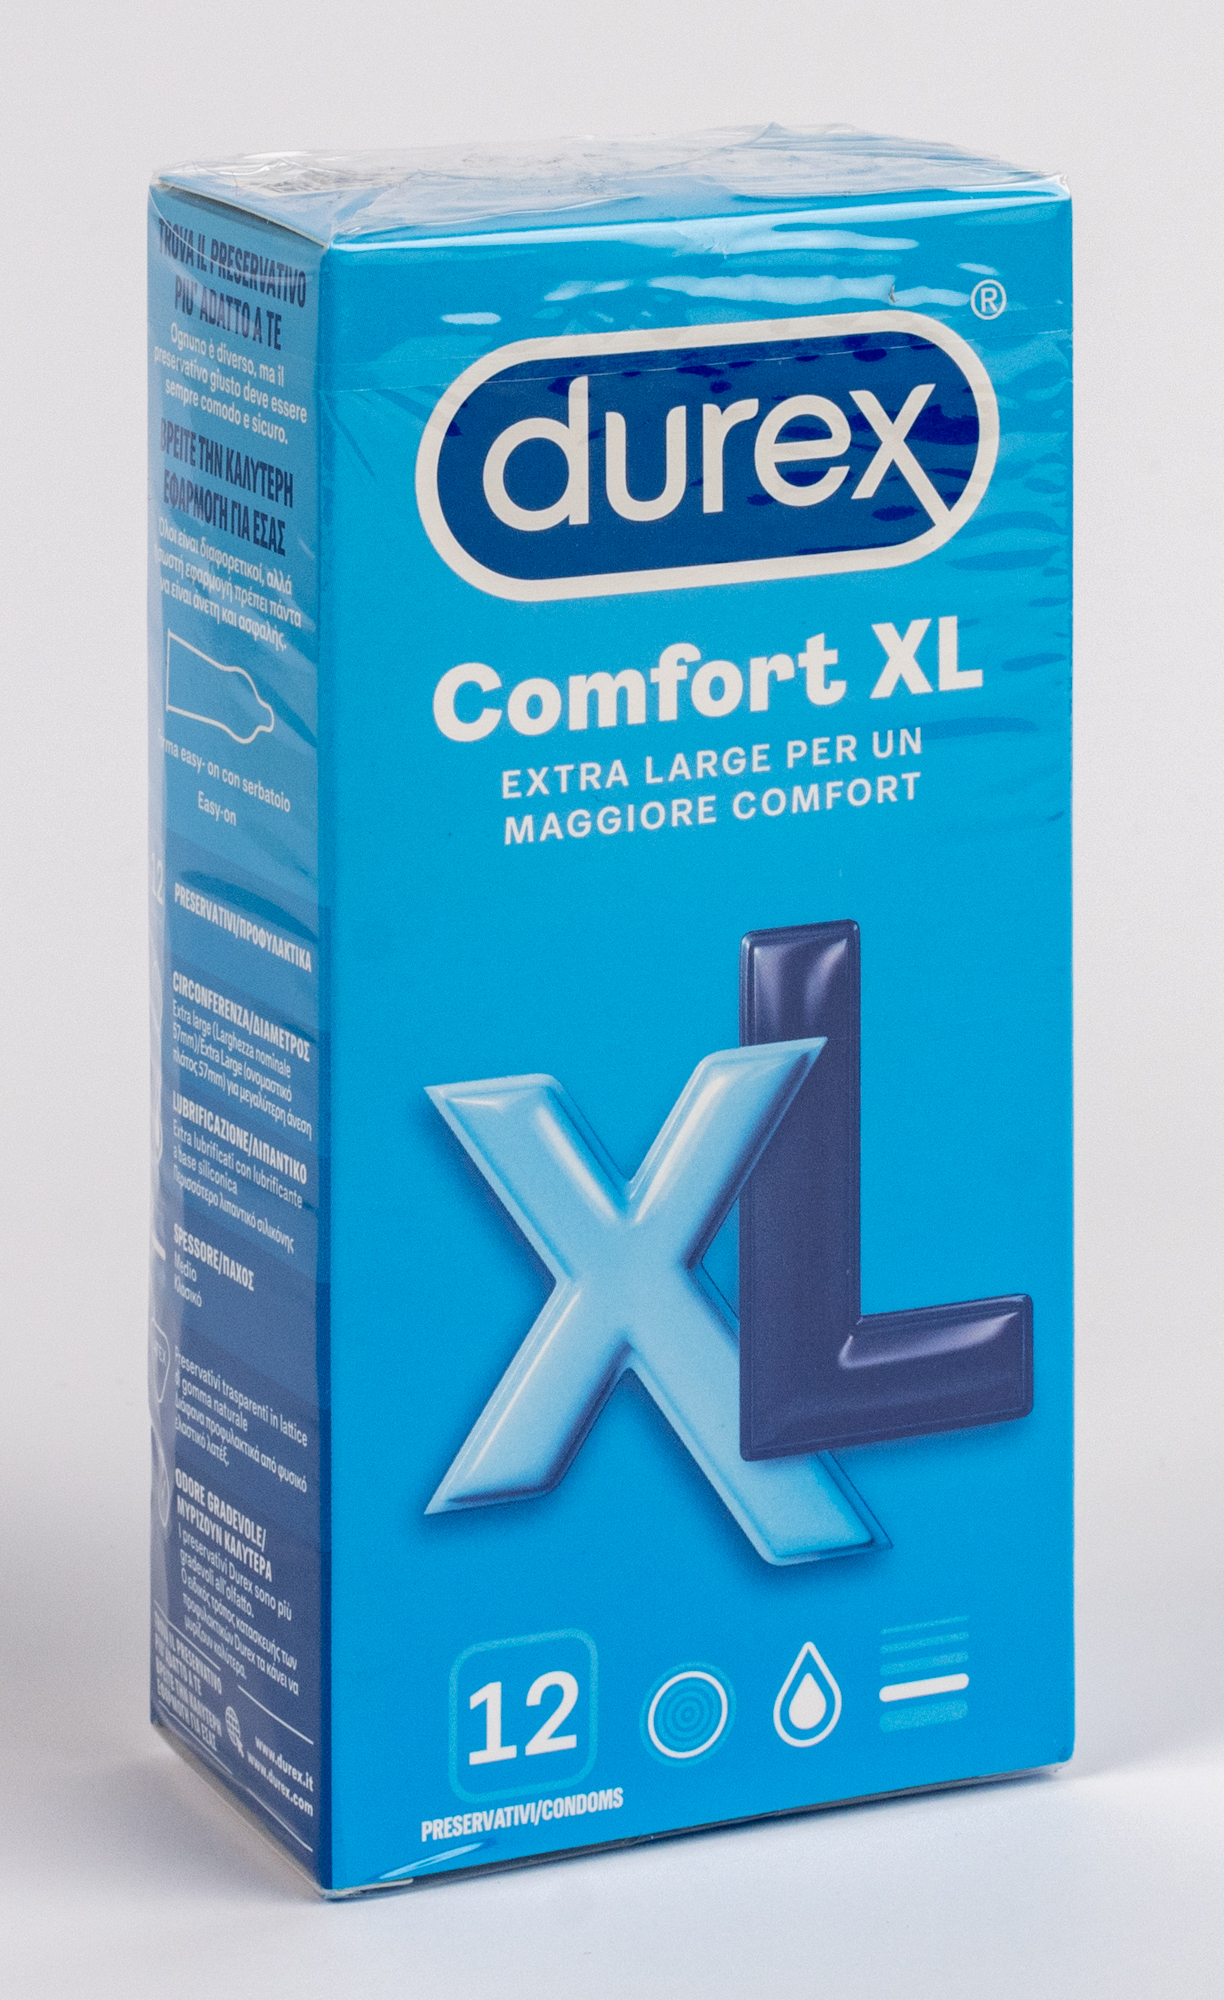 Durex Comfort XL 12pz